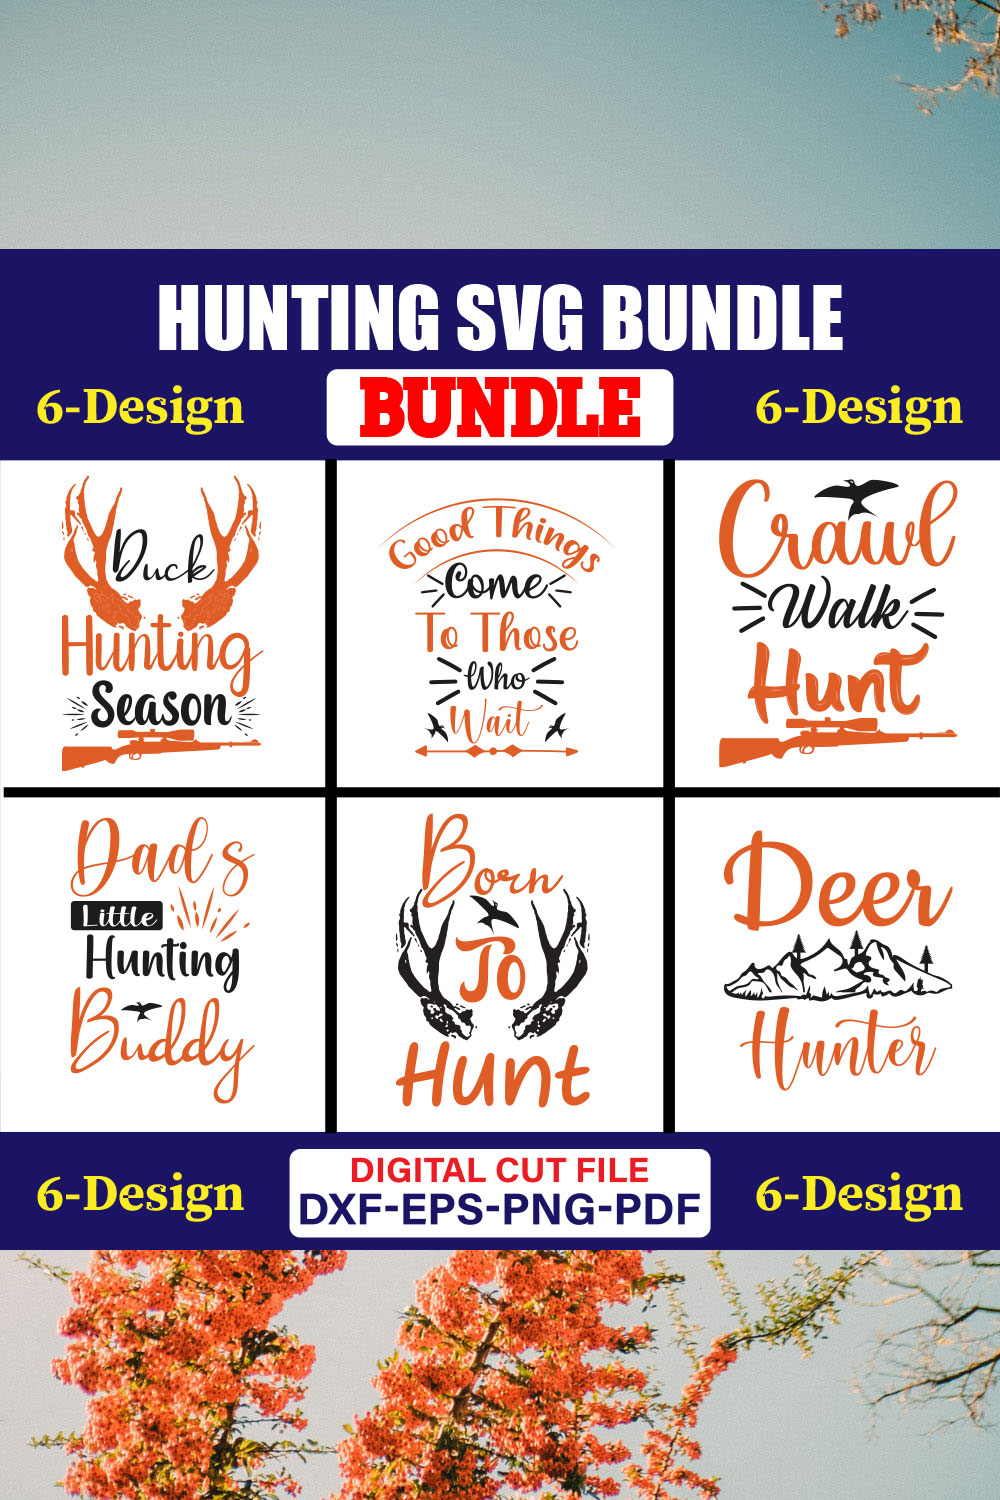 Hunting SVG T-shirt Design Bundle Vol-02 pinterest preview image.